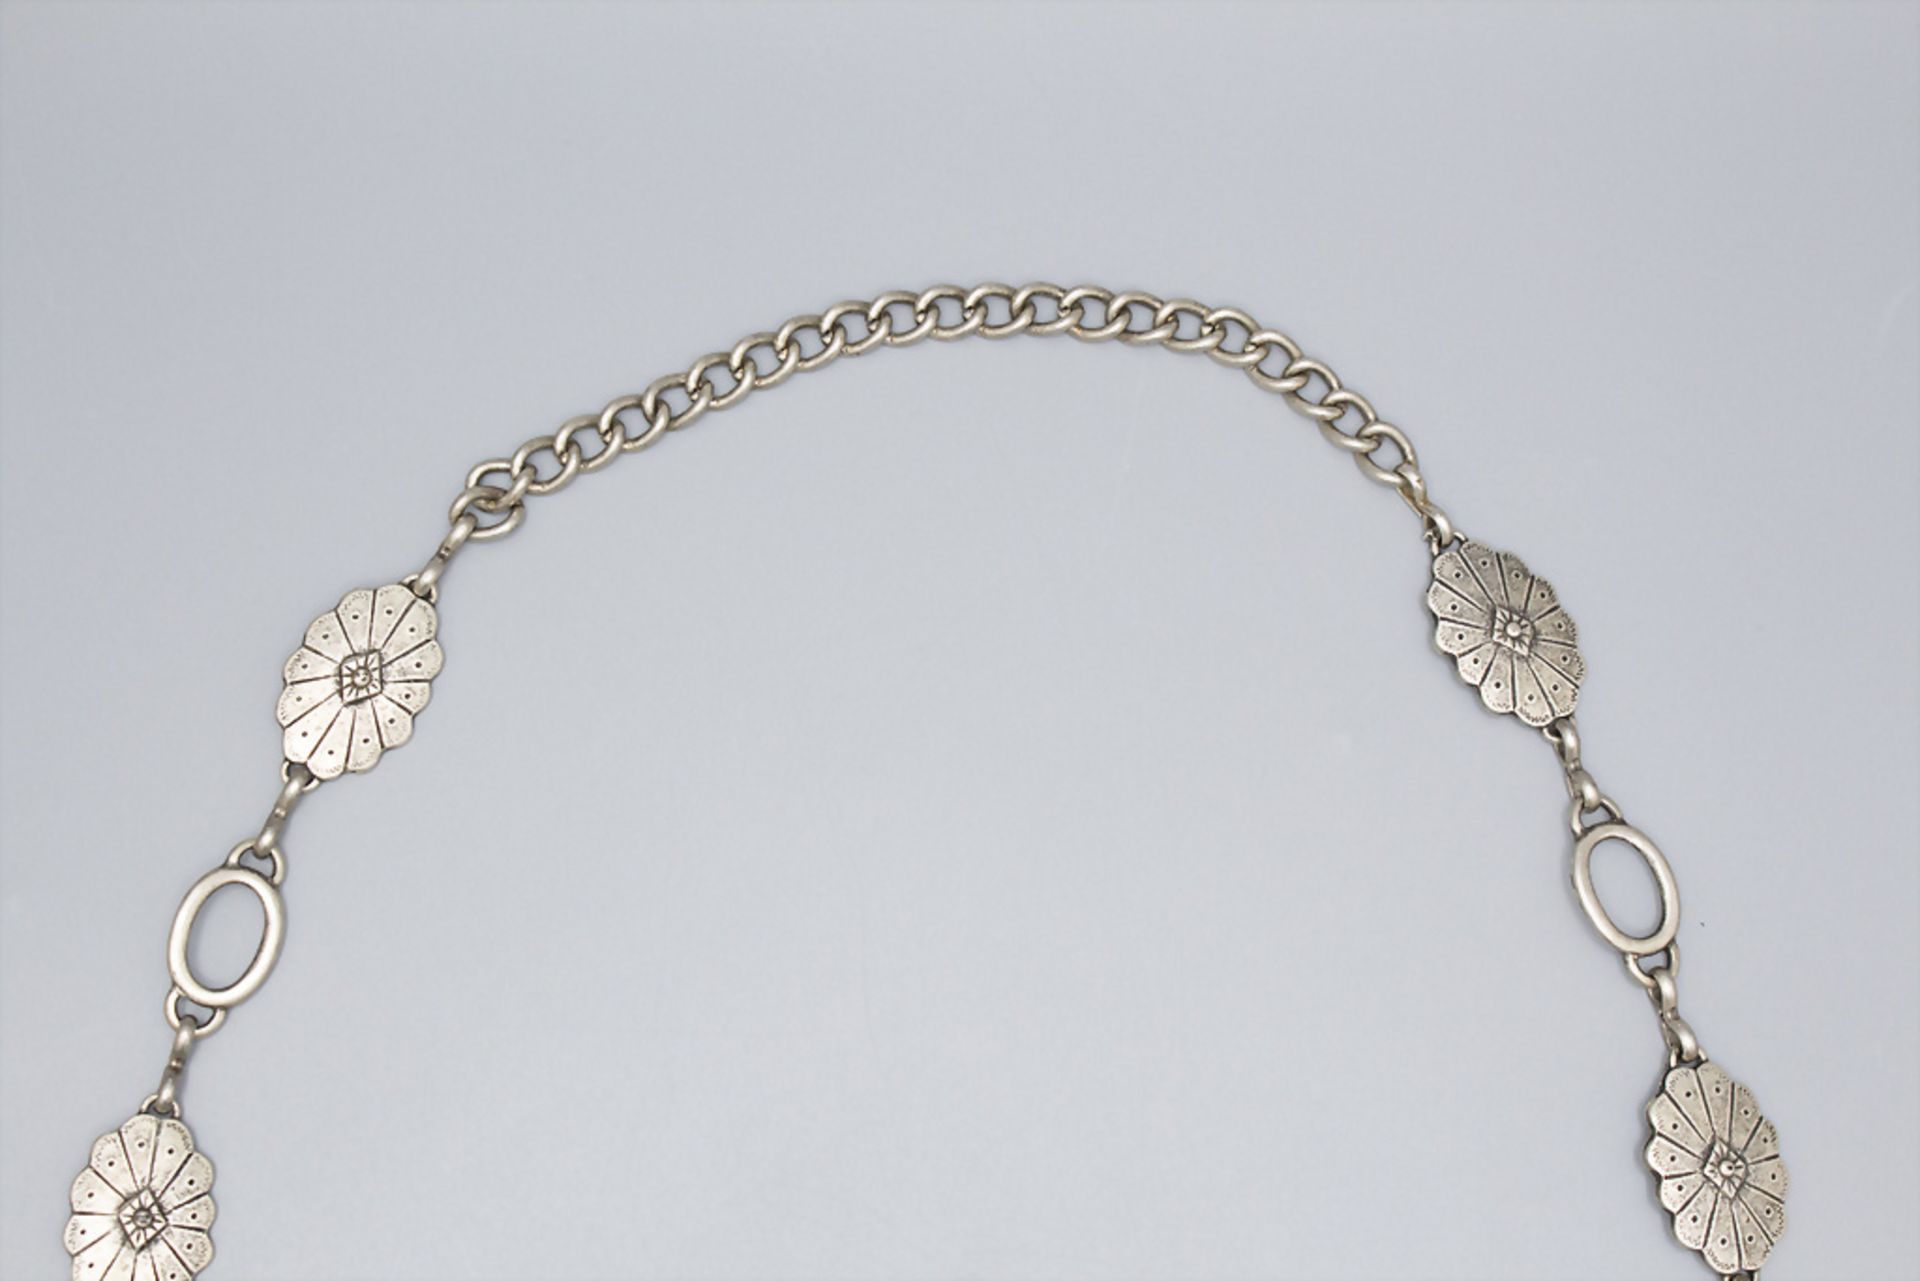 Lange Vintage Kette / A long vintage necklace, wohl 1970er Jahre - Image 4 of 4